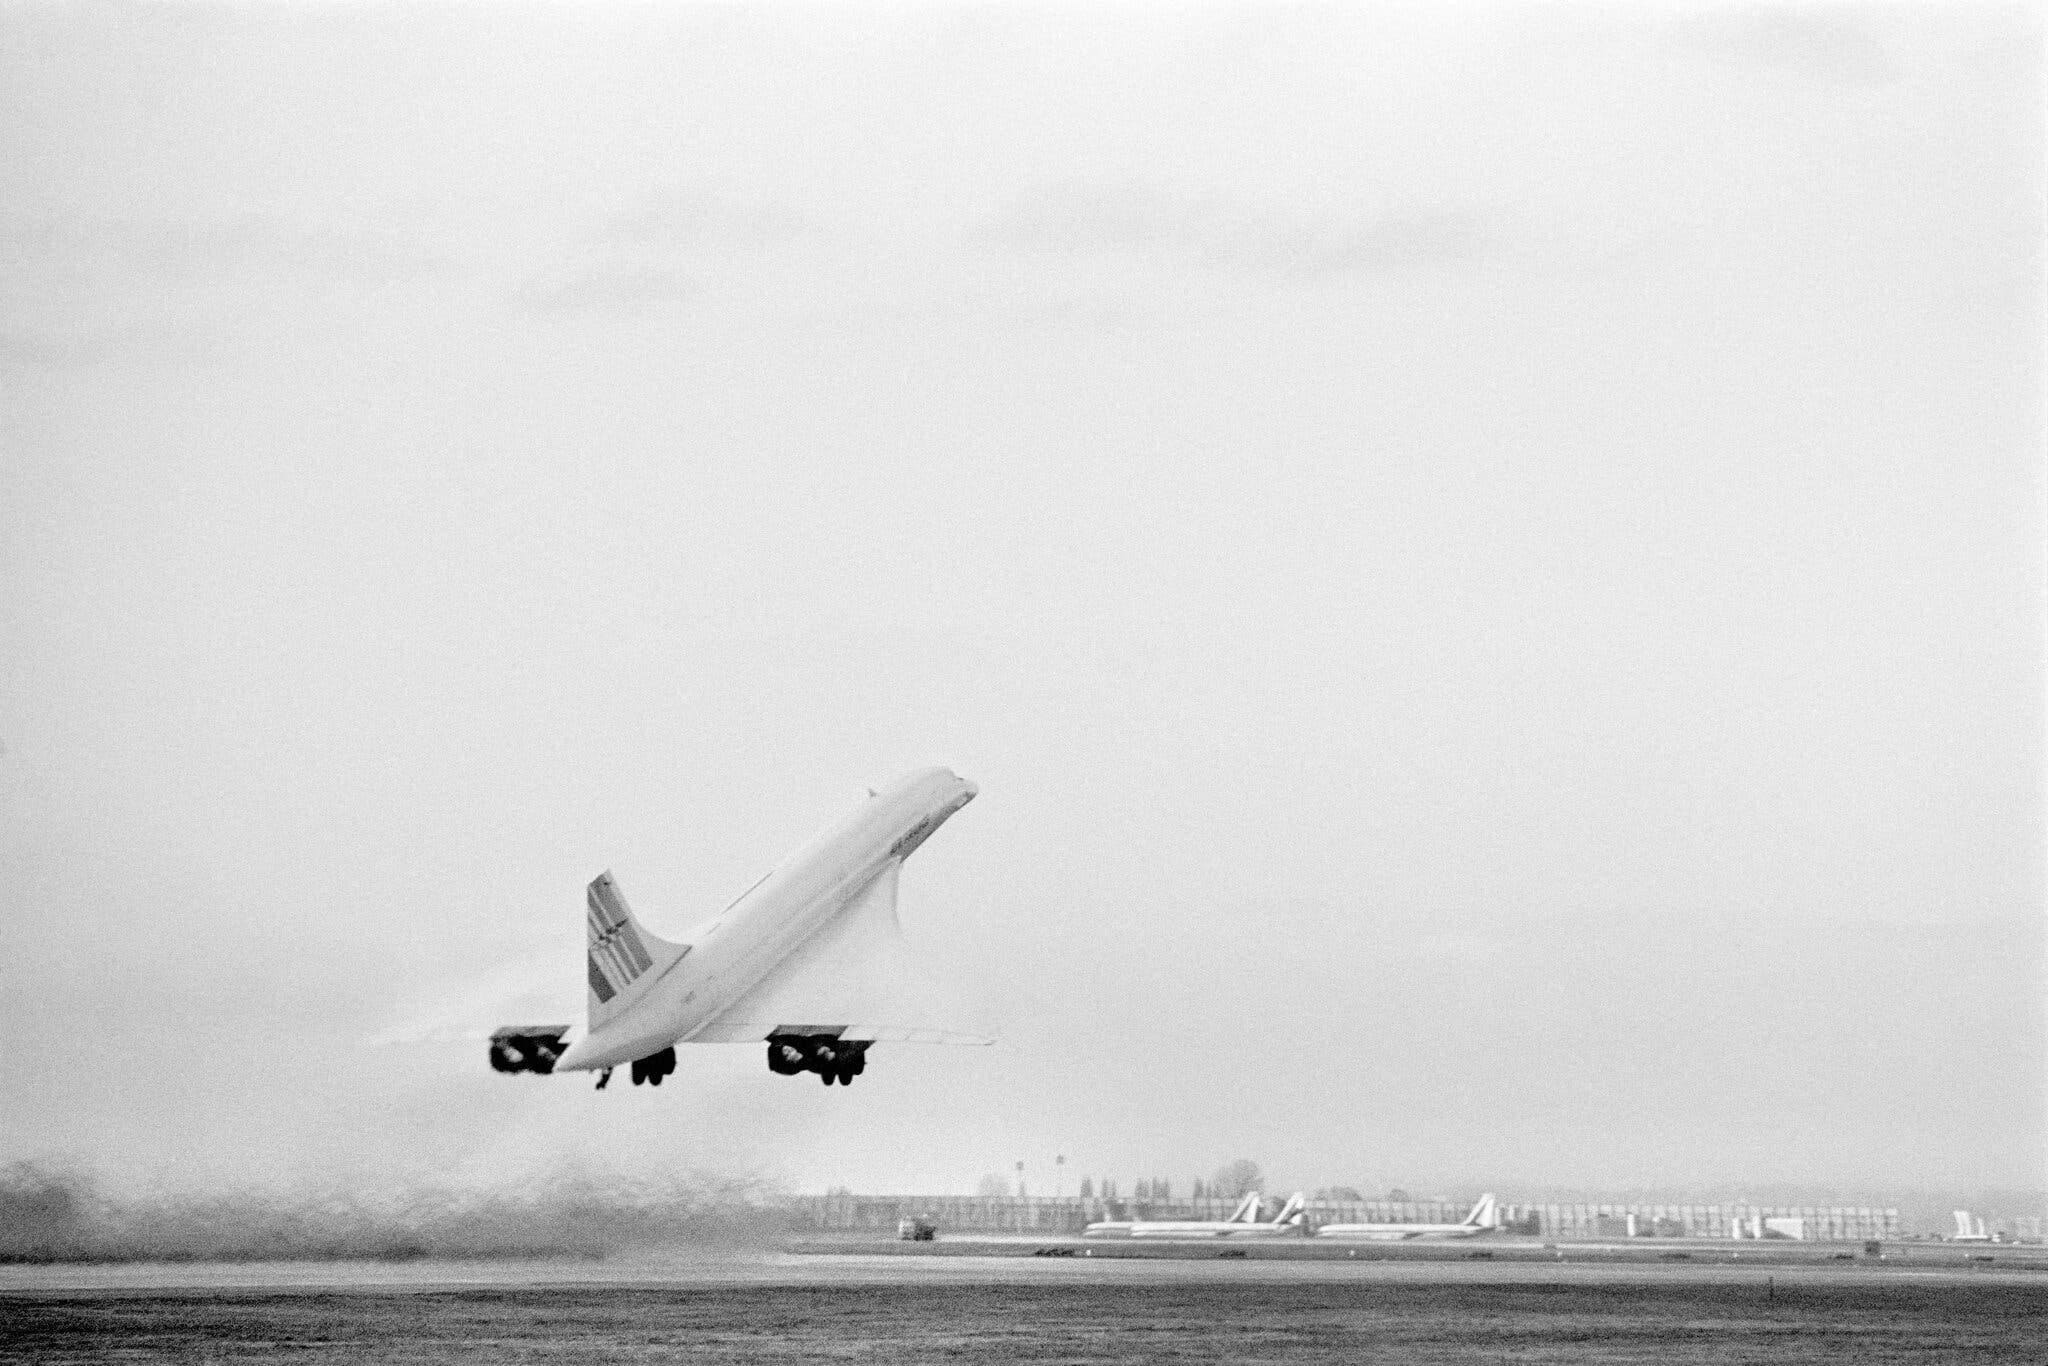 Máy bay Concorde cất cánh từ sân bay Roissy-Charles-de-Gaulle trên chuyến bay từ Paris đến New York vào tháng 11.1977